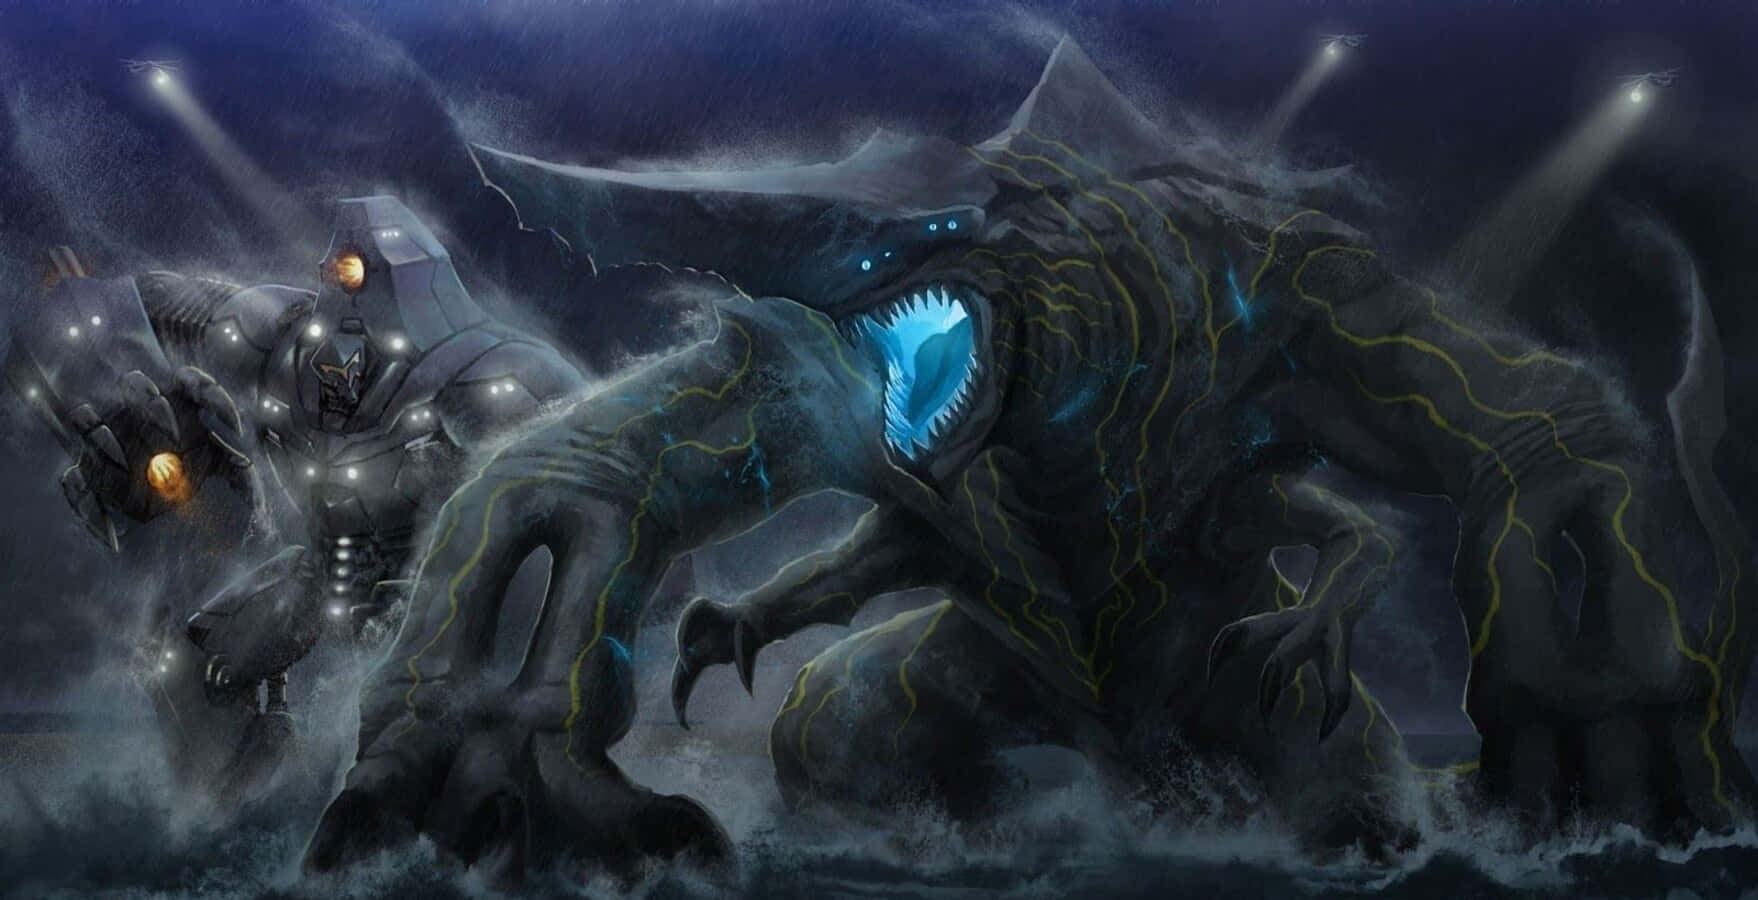 Massive Kaiju Monster In Battle Stance